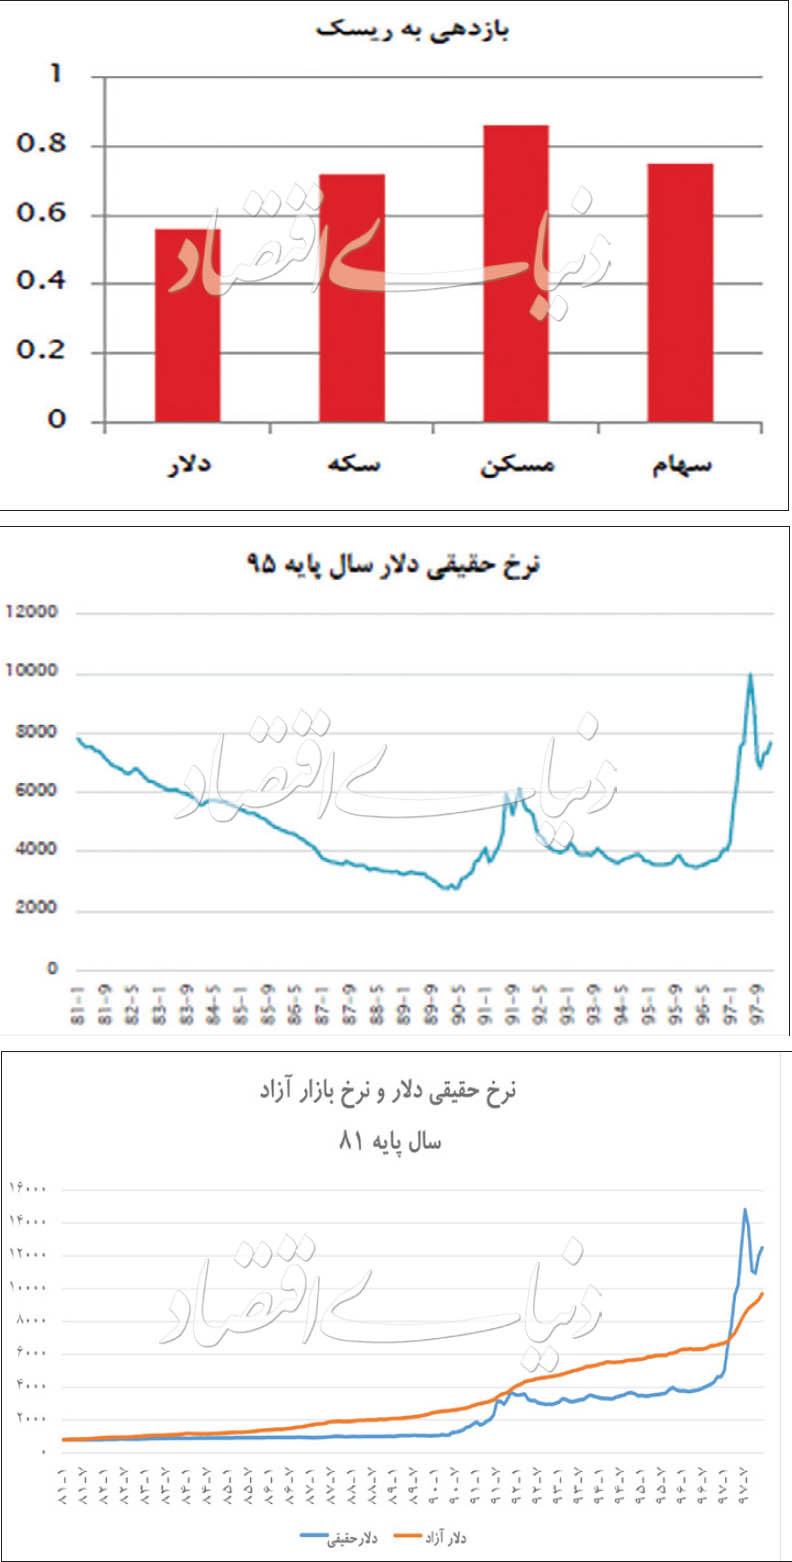 پناهگاه امن سرمایه گذاری در اقتصاد ایران